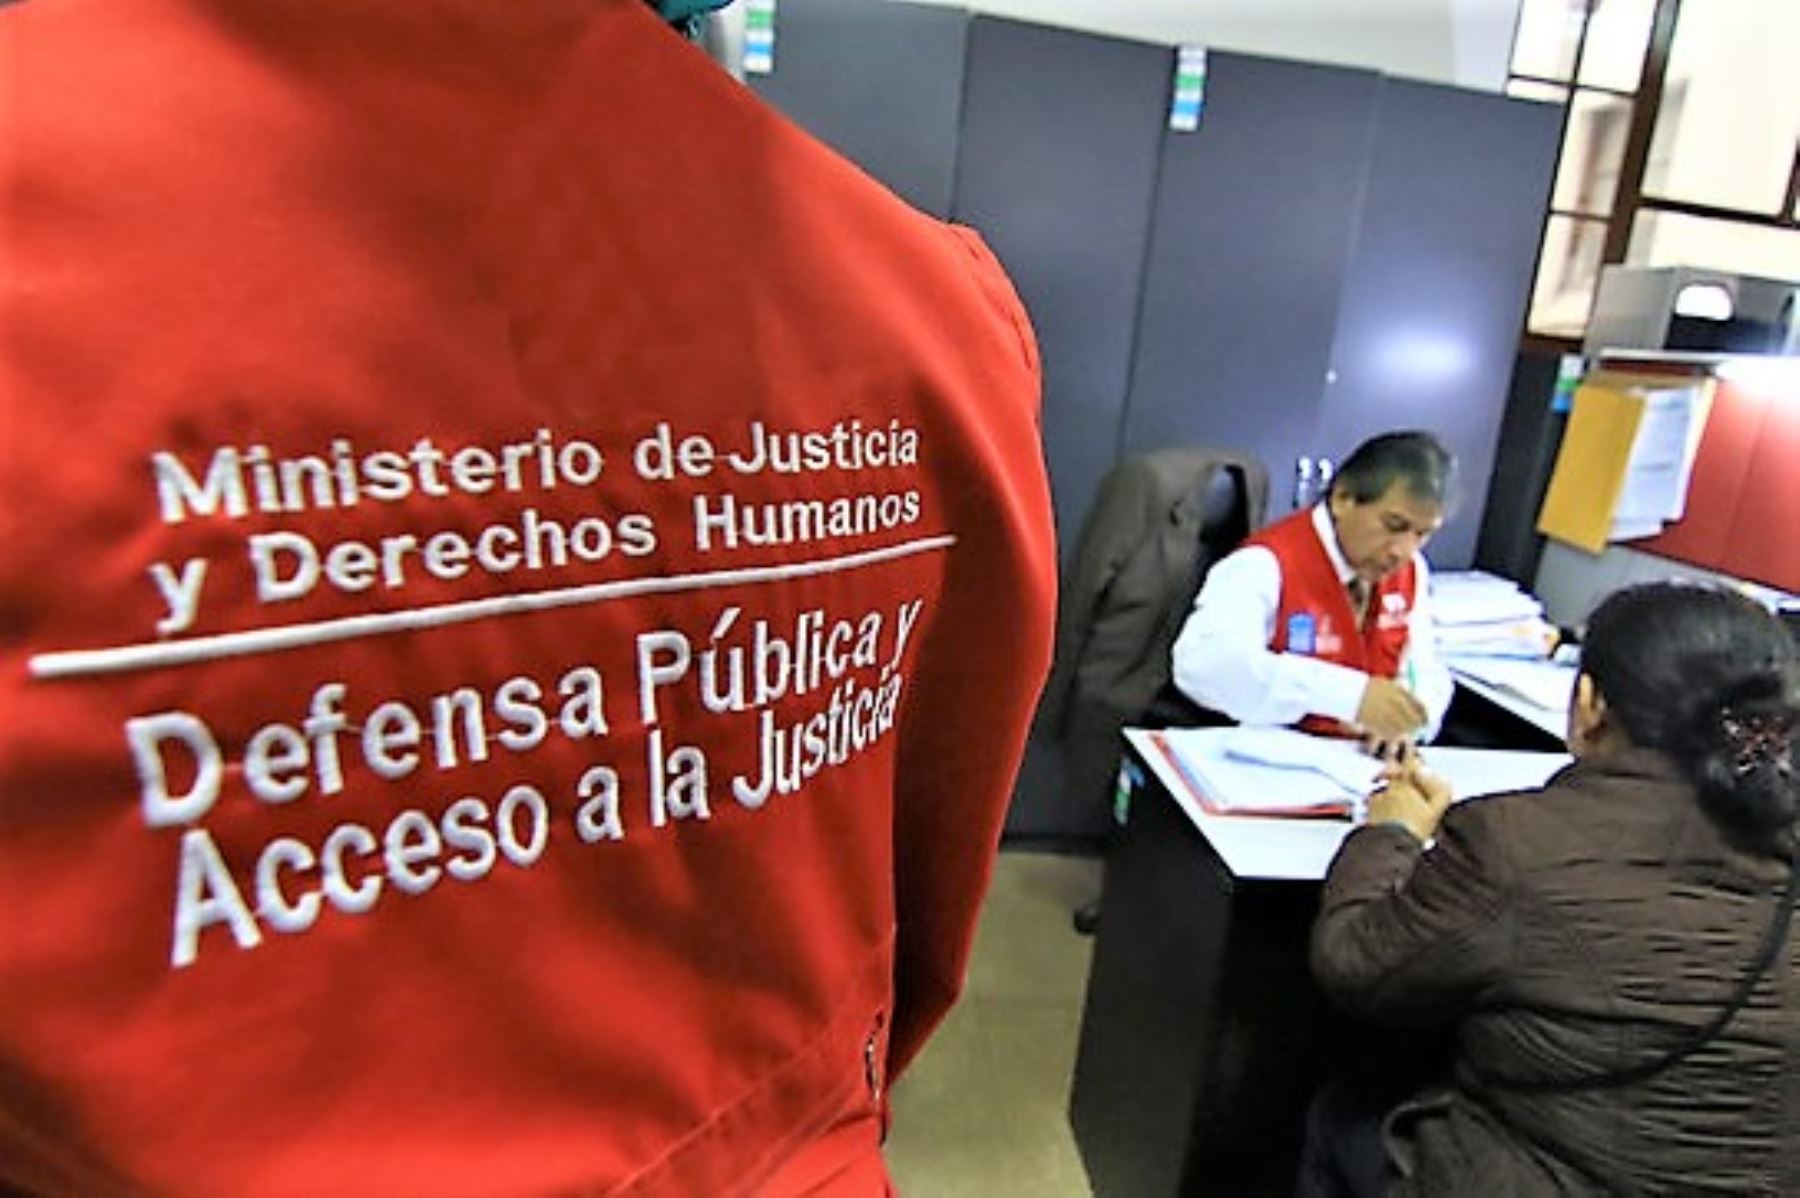 El Ministerio de Justicia mantiene en operaciones sus servicios de defensa legal en el período de aislamiento social obligatorio.